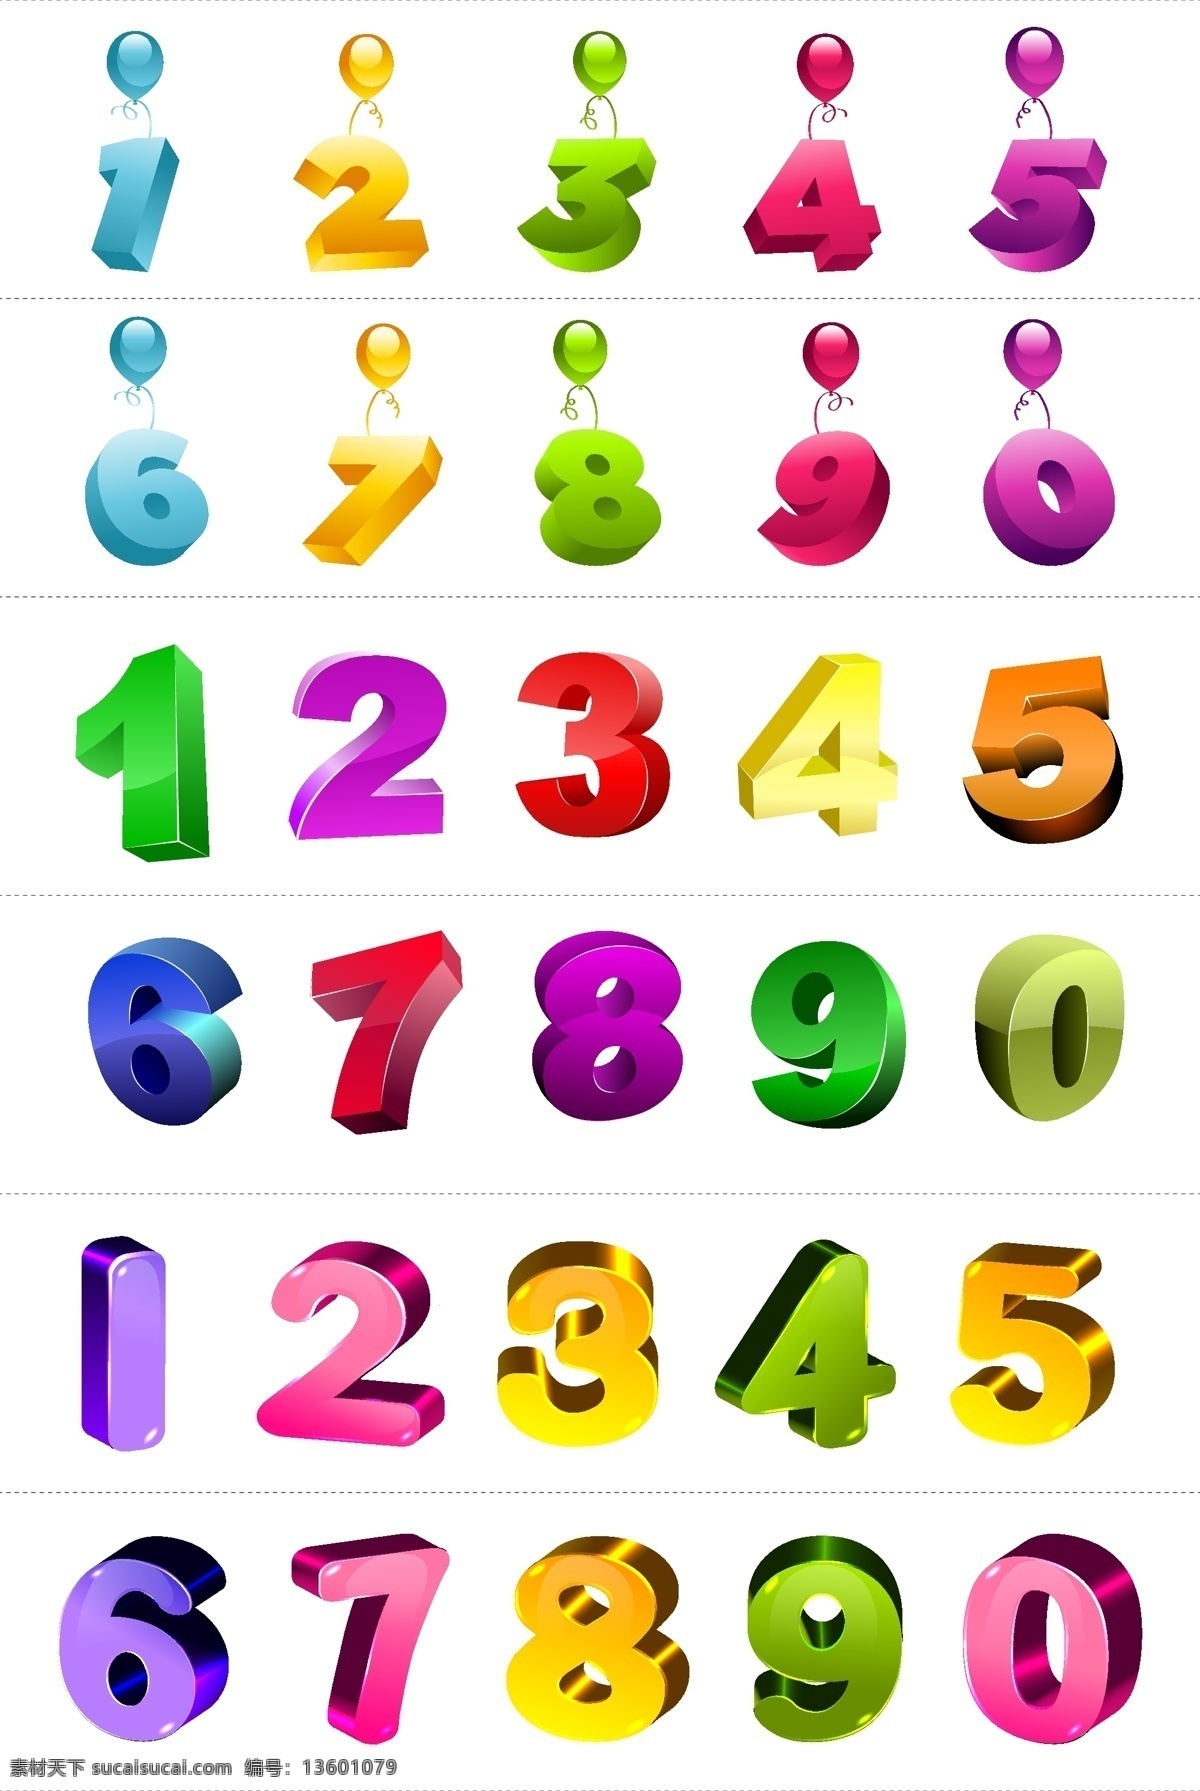 矢量 彩色 3d 立体 数字 矢量数字 彩色数字 立体数字 质感数字 3d数字 气球数字 倒计时数字 透视数字 整套数字 创意数字 高档数字 数字字母 文化艺术 绘画书法